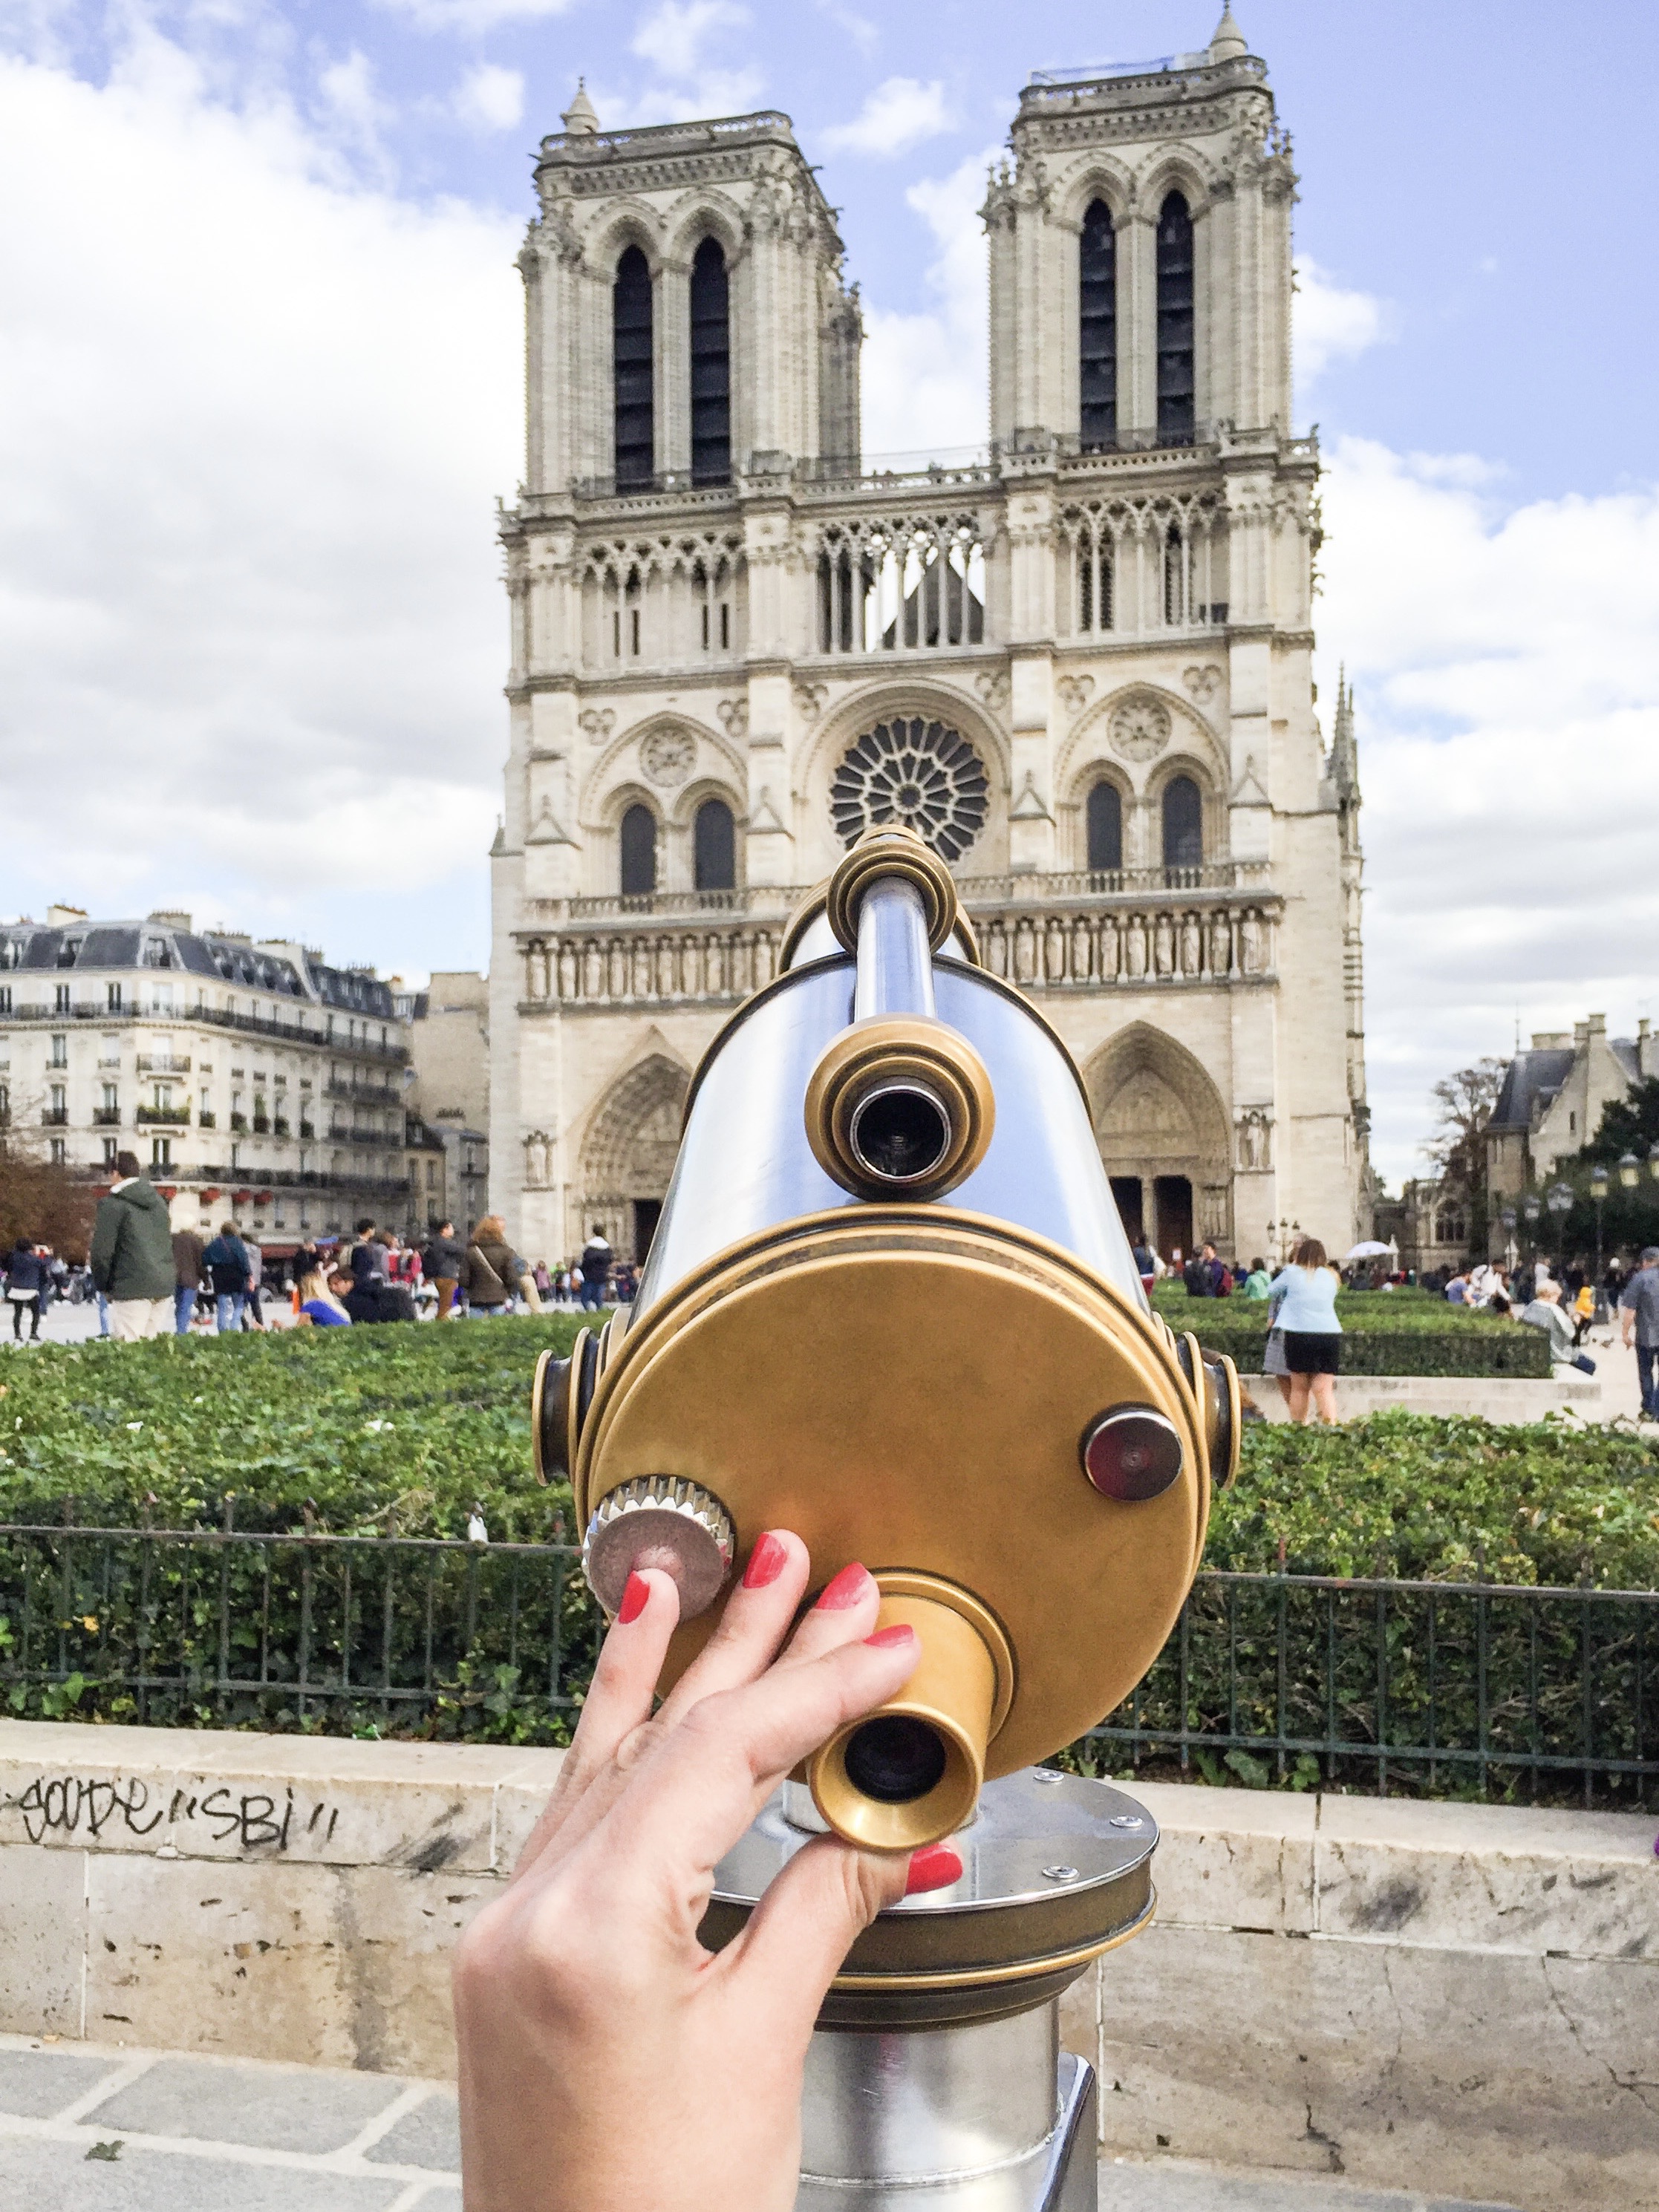 Notre Dame- most famous buildings in Paris